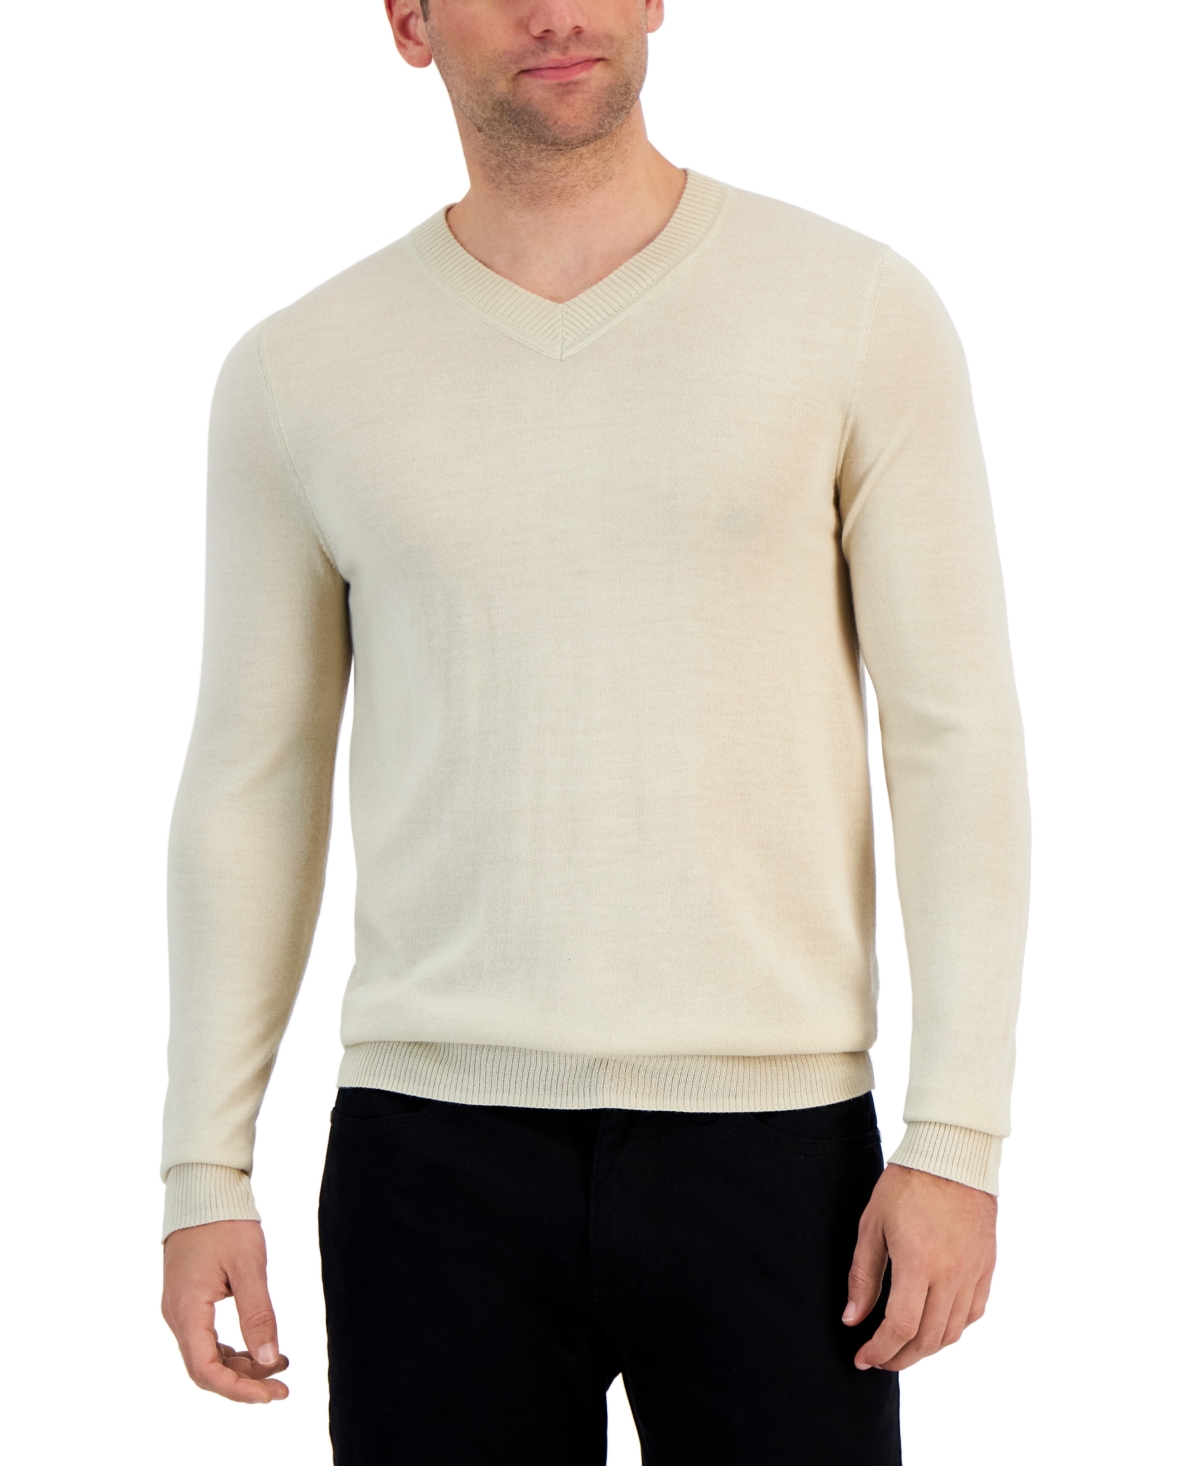 Men's Long-Sleeve V-Neck Merino Sweater, Created for Macy's - Brown Rice